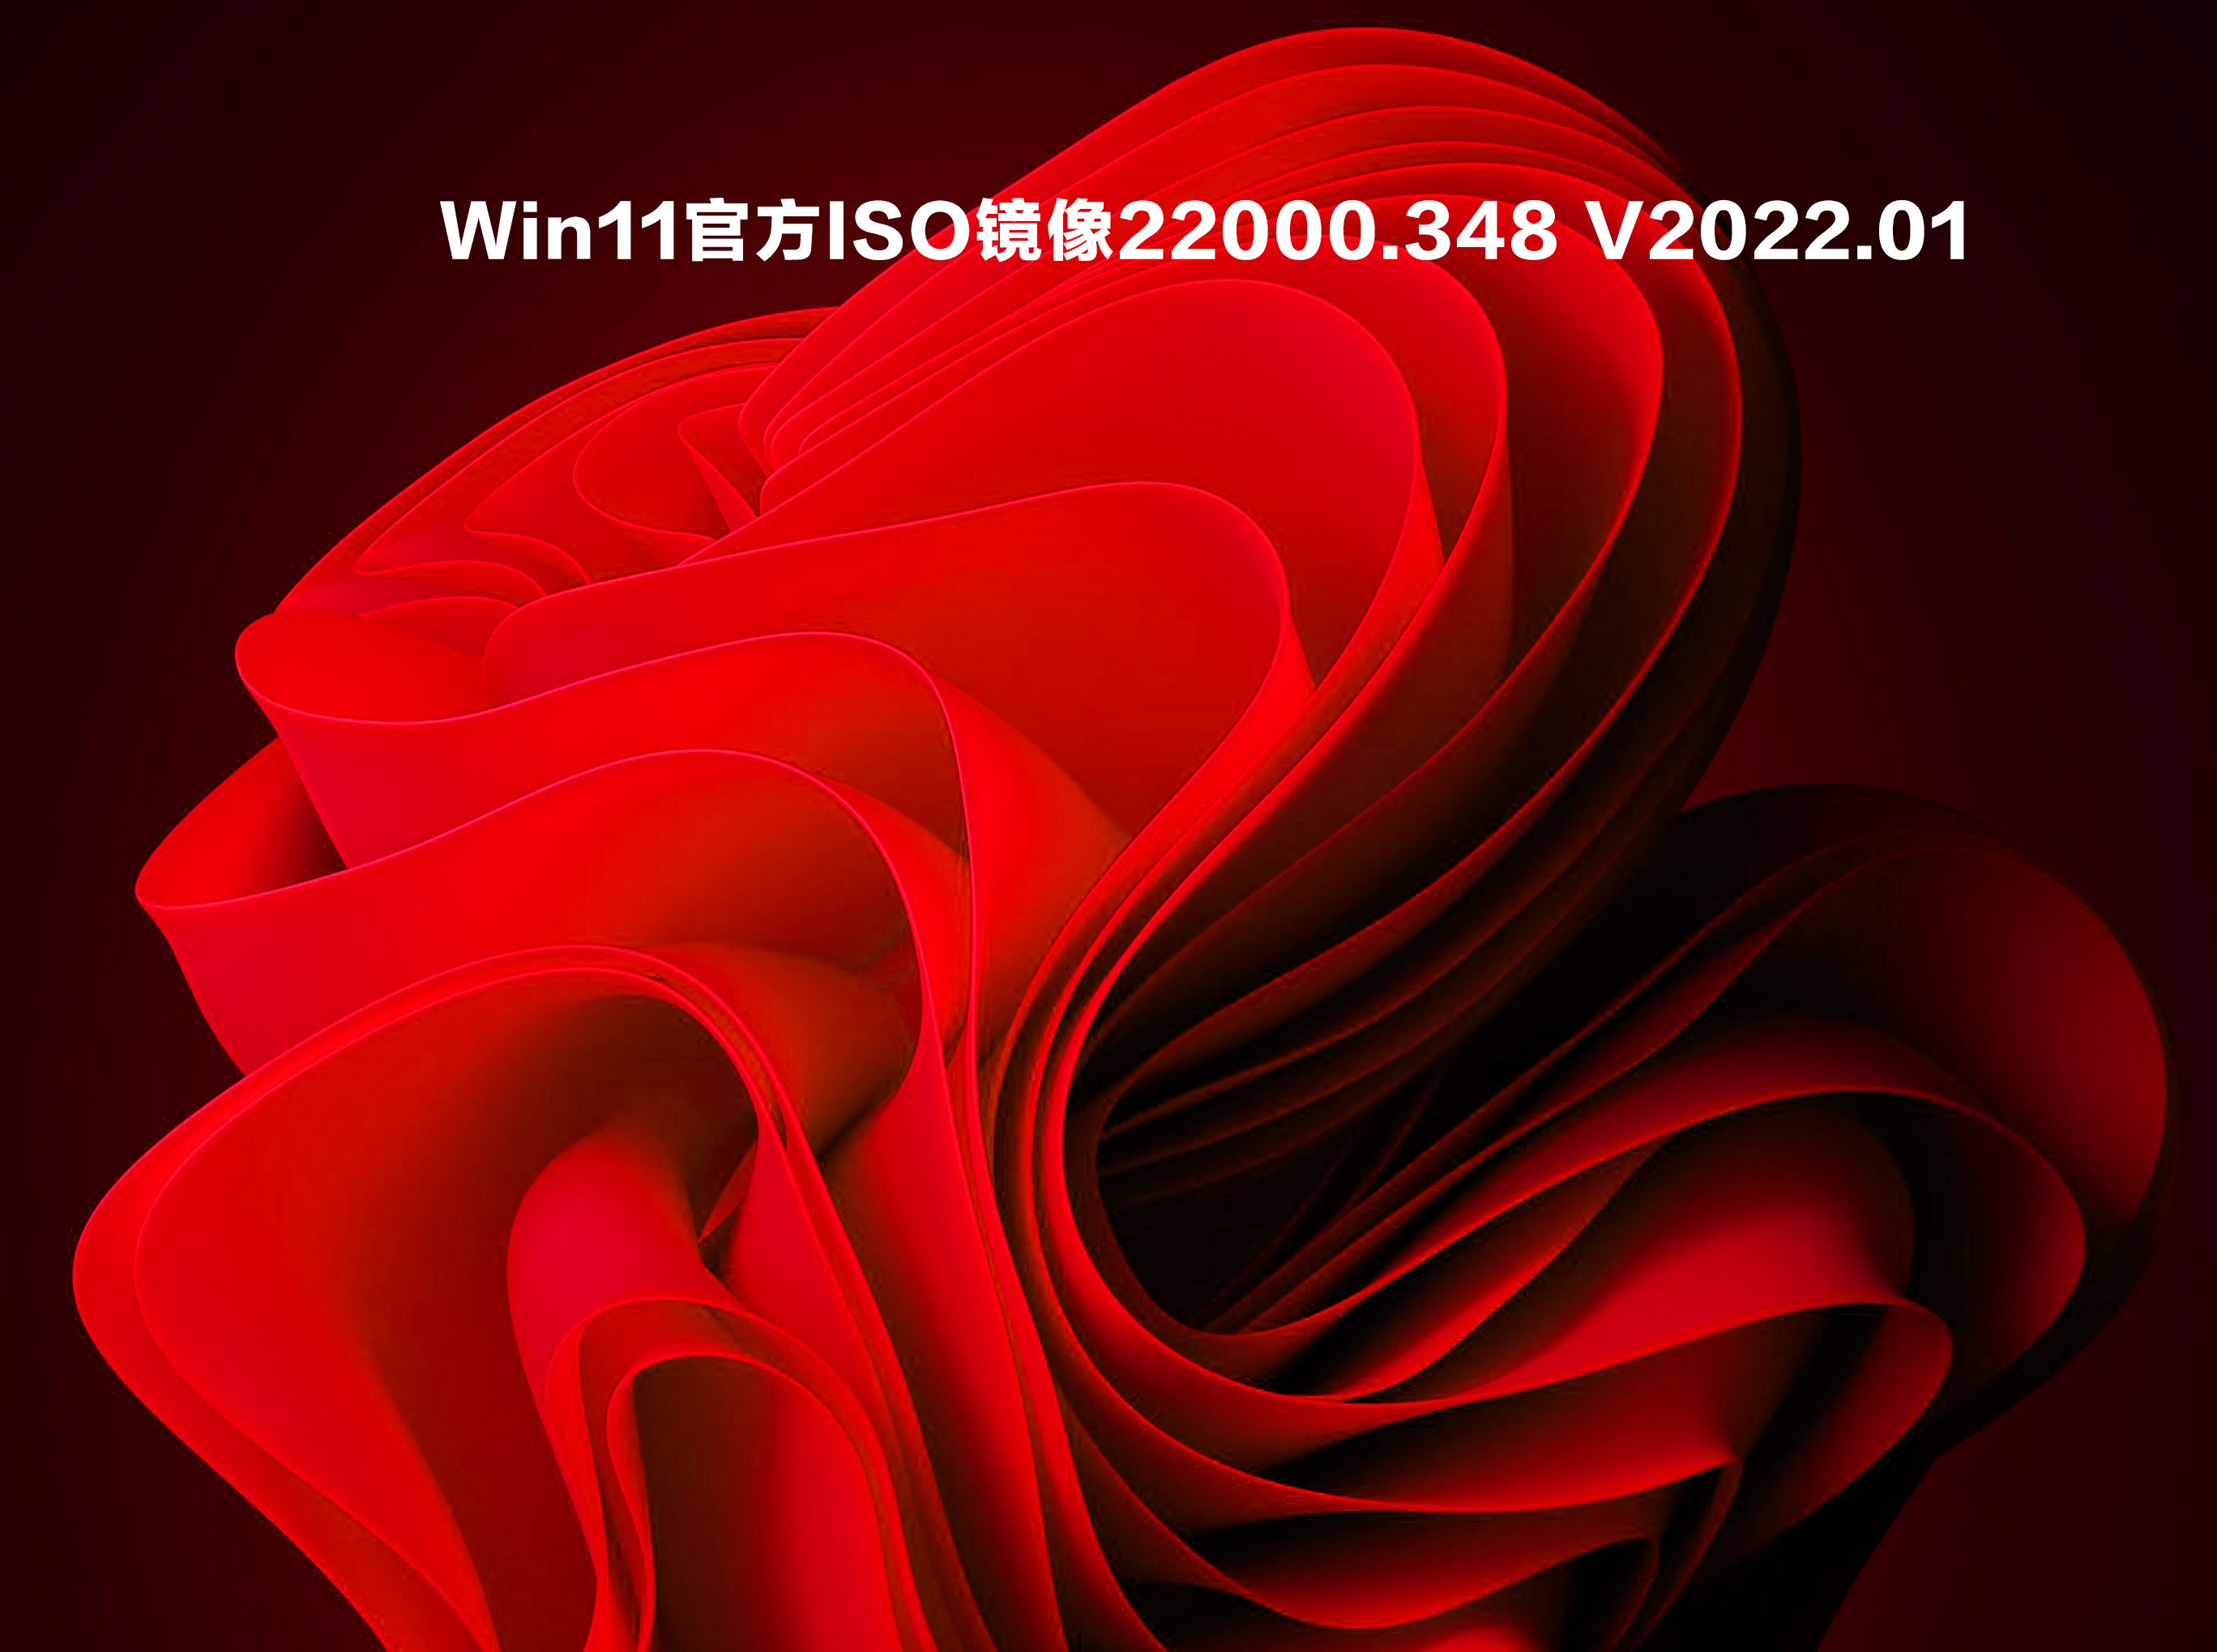 Win11官方ISO镜像22000.348 V2022.01